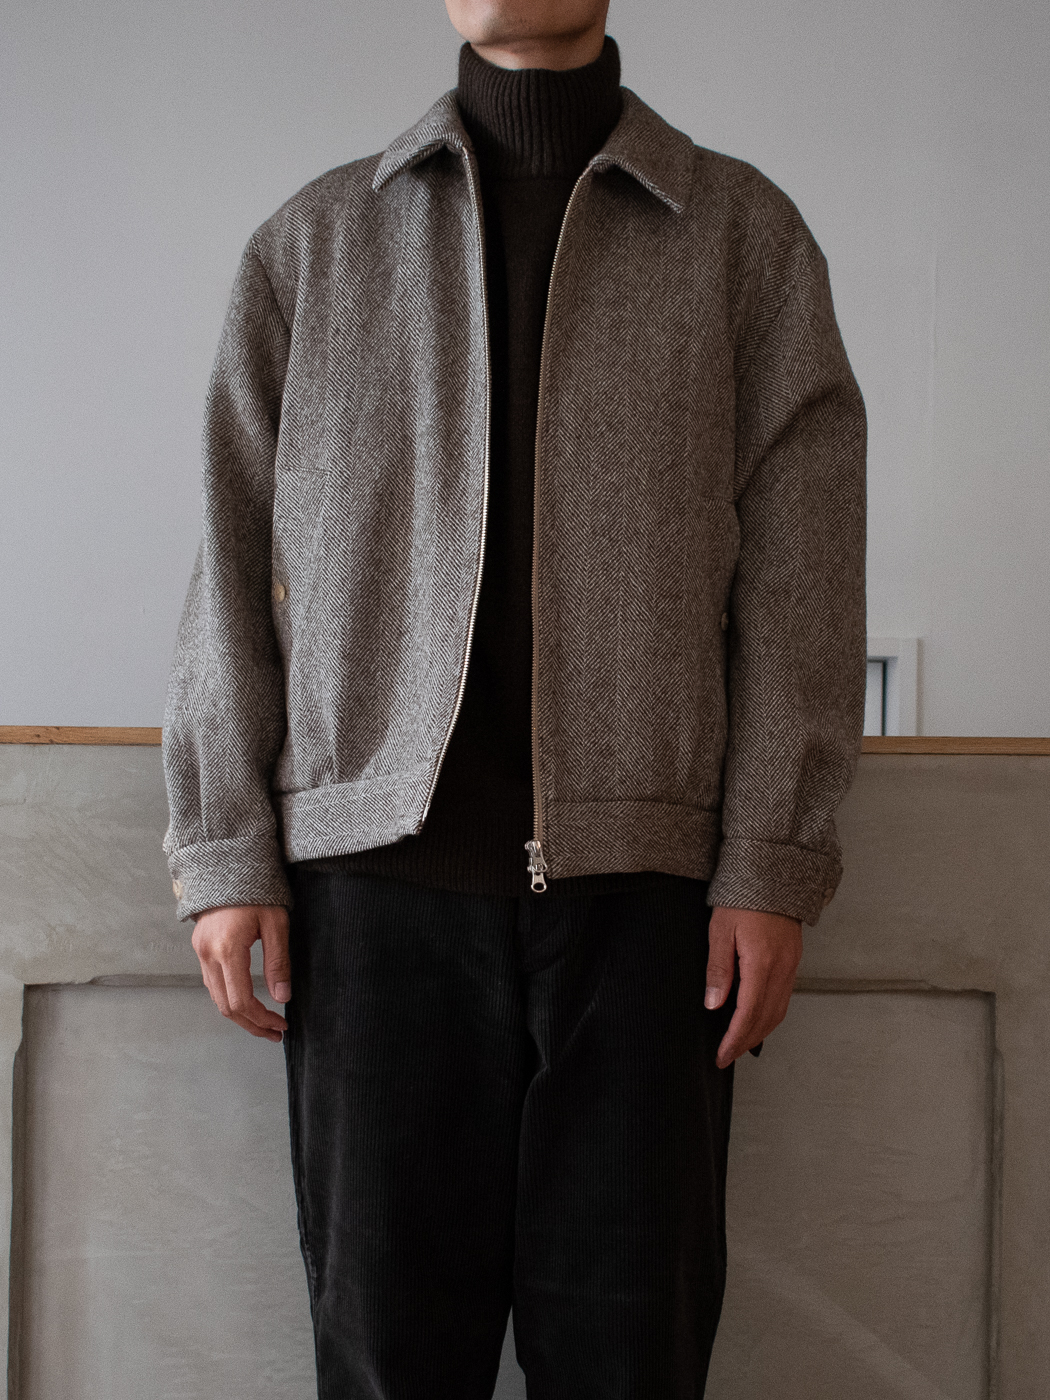 Arles Wool Tweed Harrington Jacketアルルウール